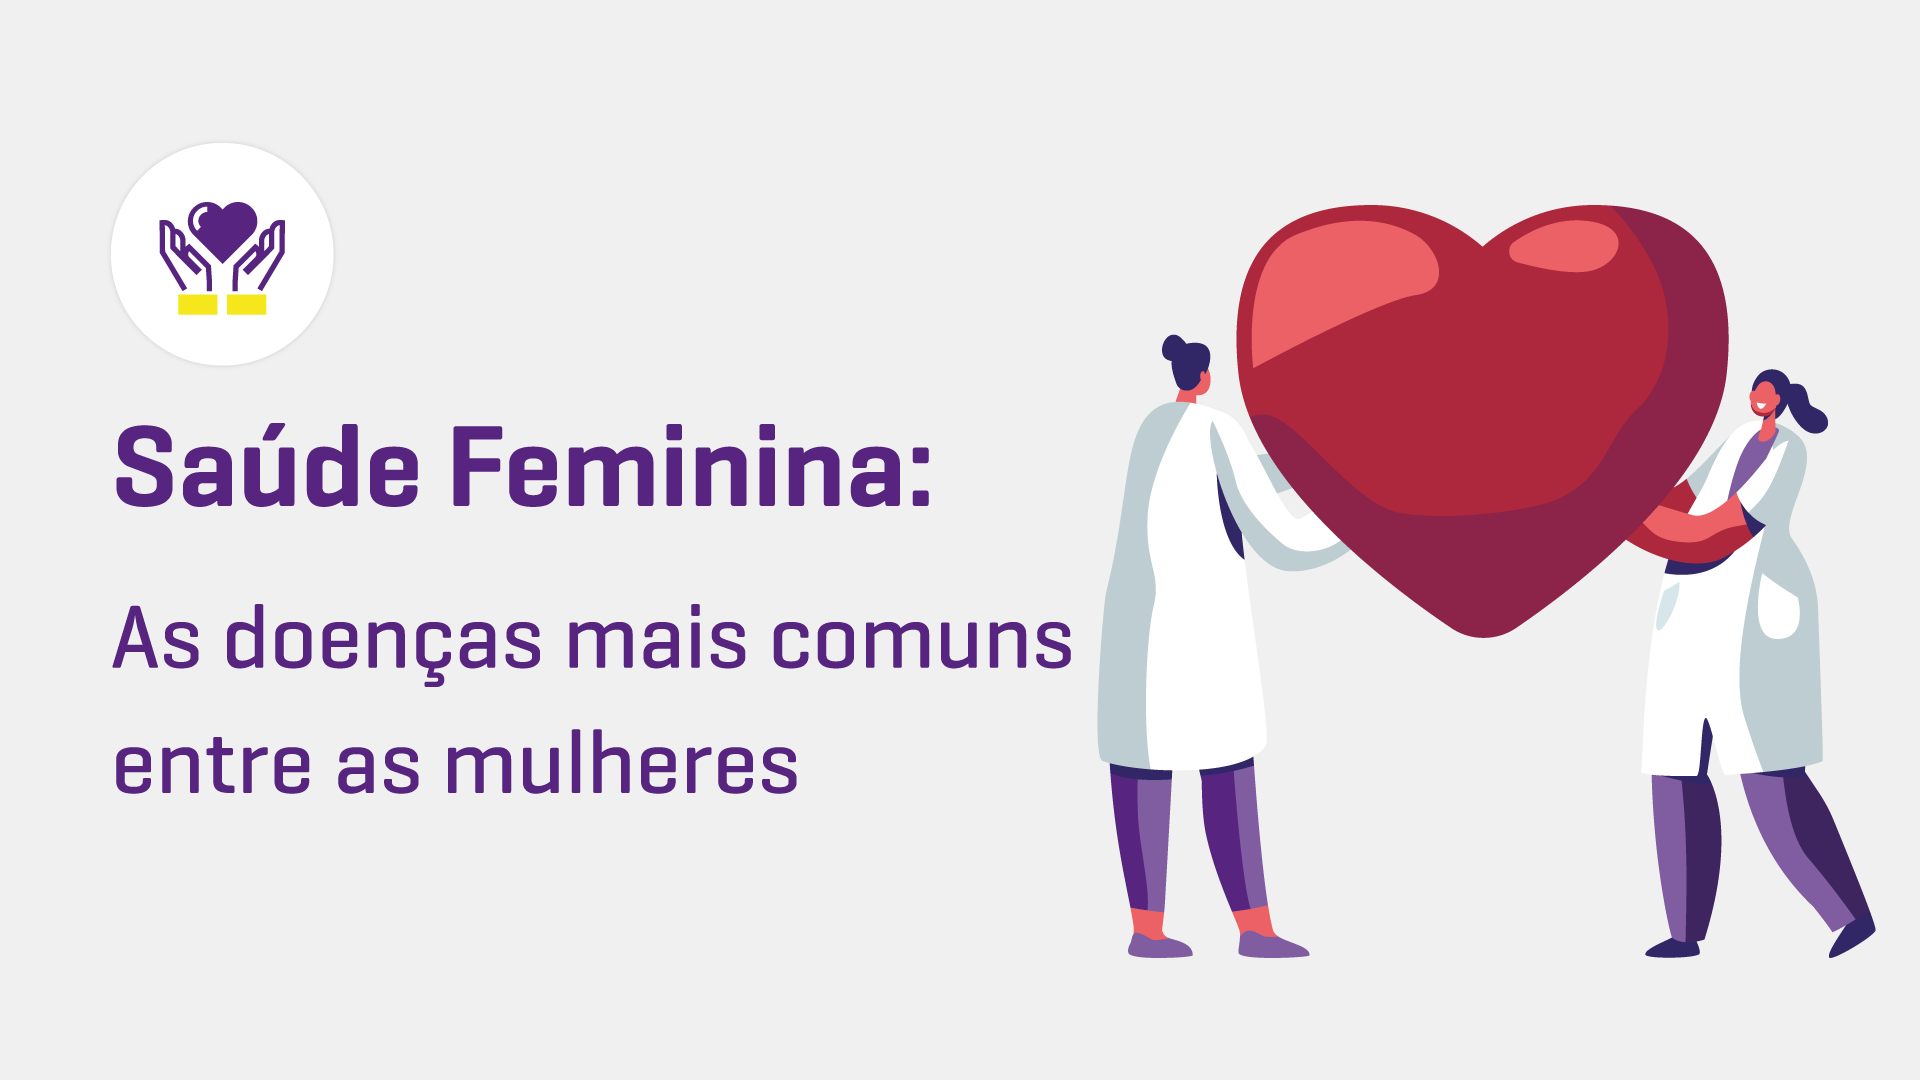 Saúde feminina: as doenças mais comuns entre as mulheres e como prevení-las